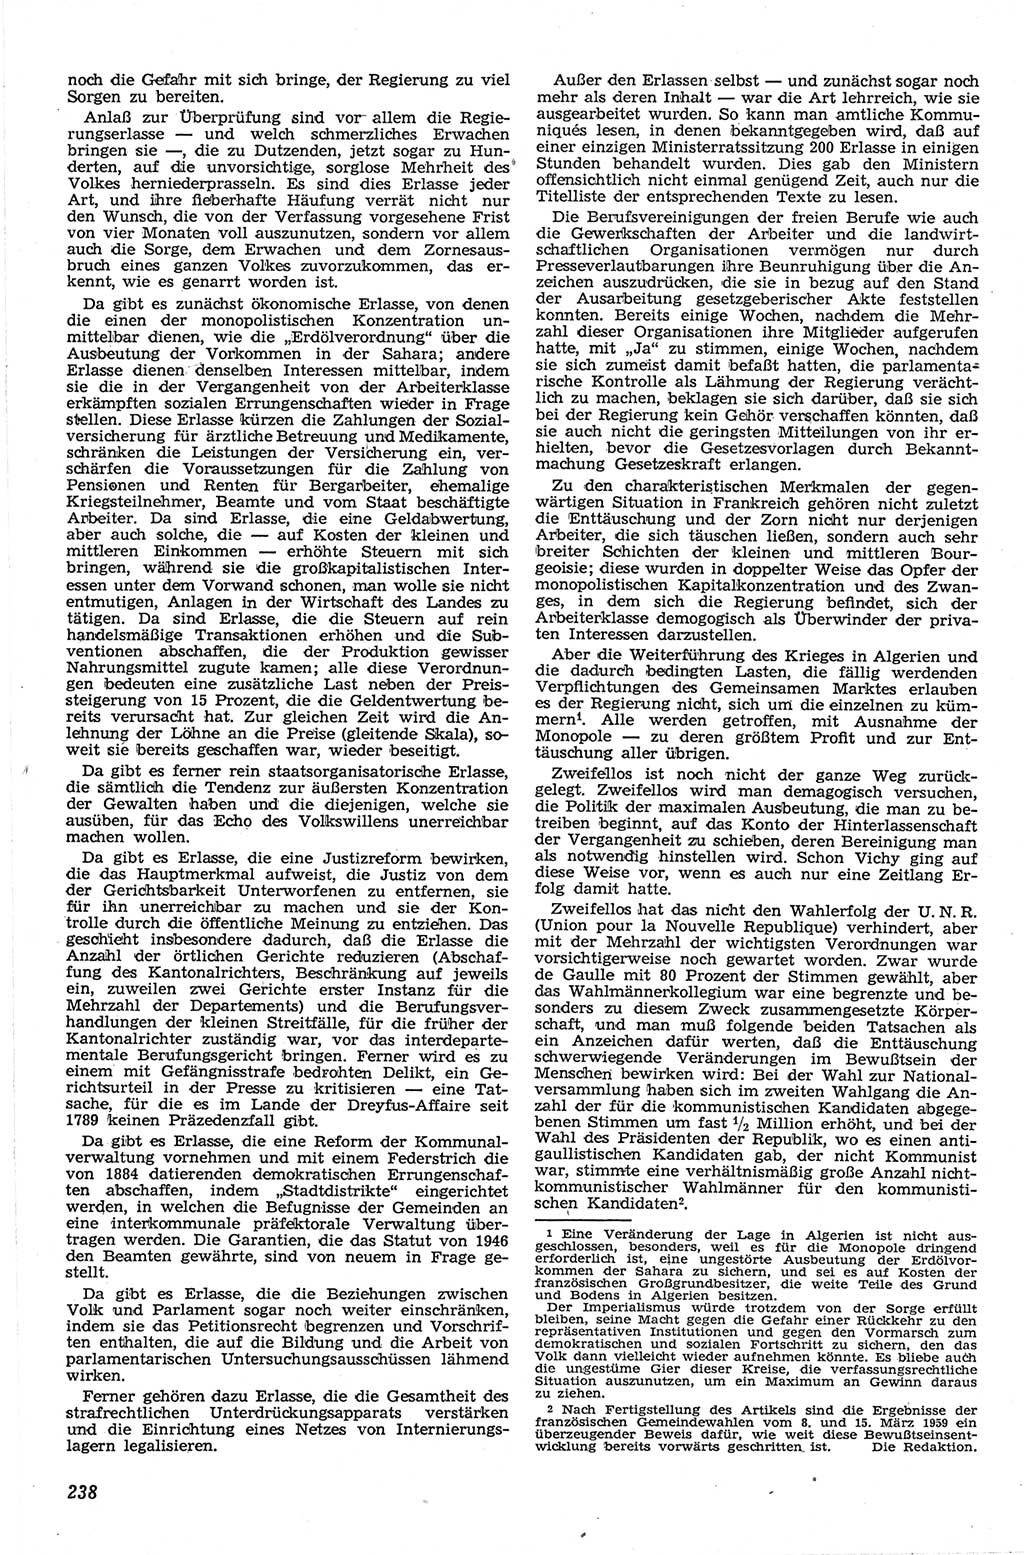 Neue Justiz (NJ), Zeitschrift für Recht und Rechtswissenschaft [Deutsche Demokratische Republik (DDR)], 13. Jahrgang 1959, Seite 238 (NJ DDR 1959, S. 238)